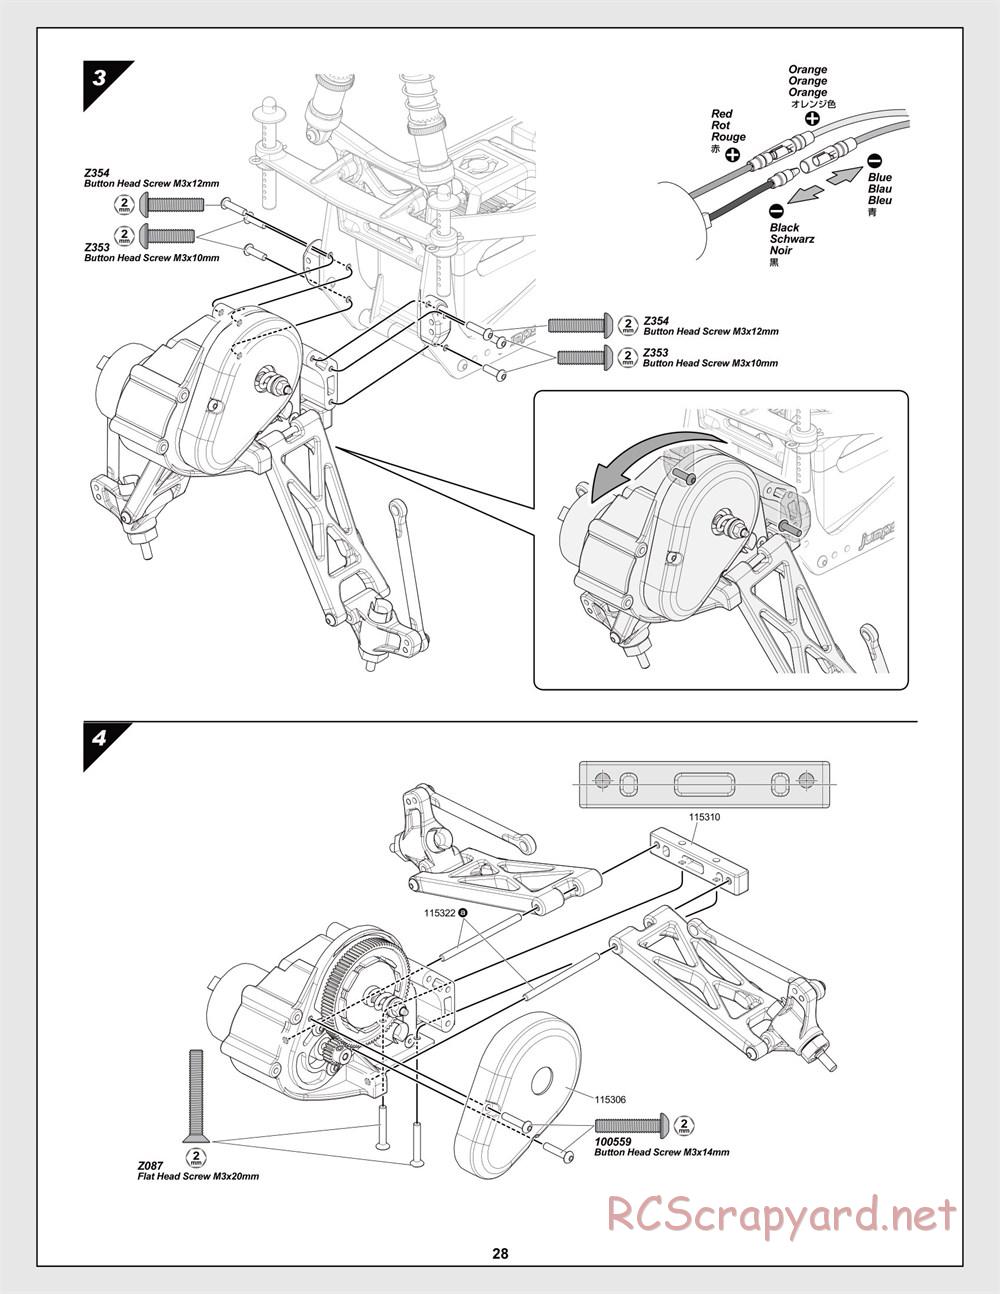 HPI - Jumpshot MT V2 - Manual - Page 28